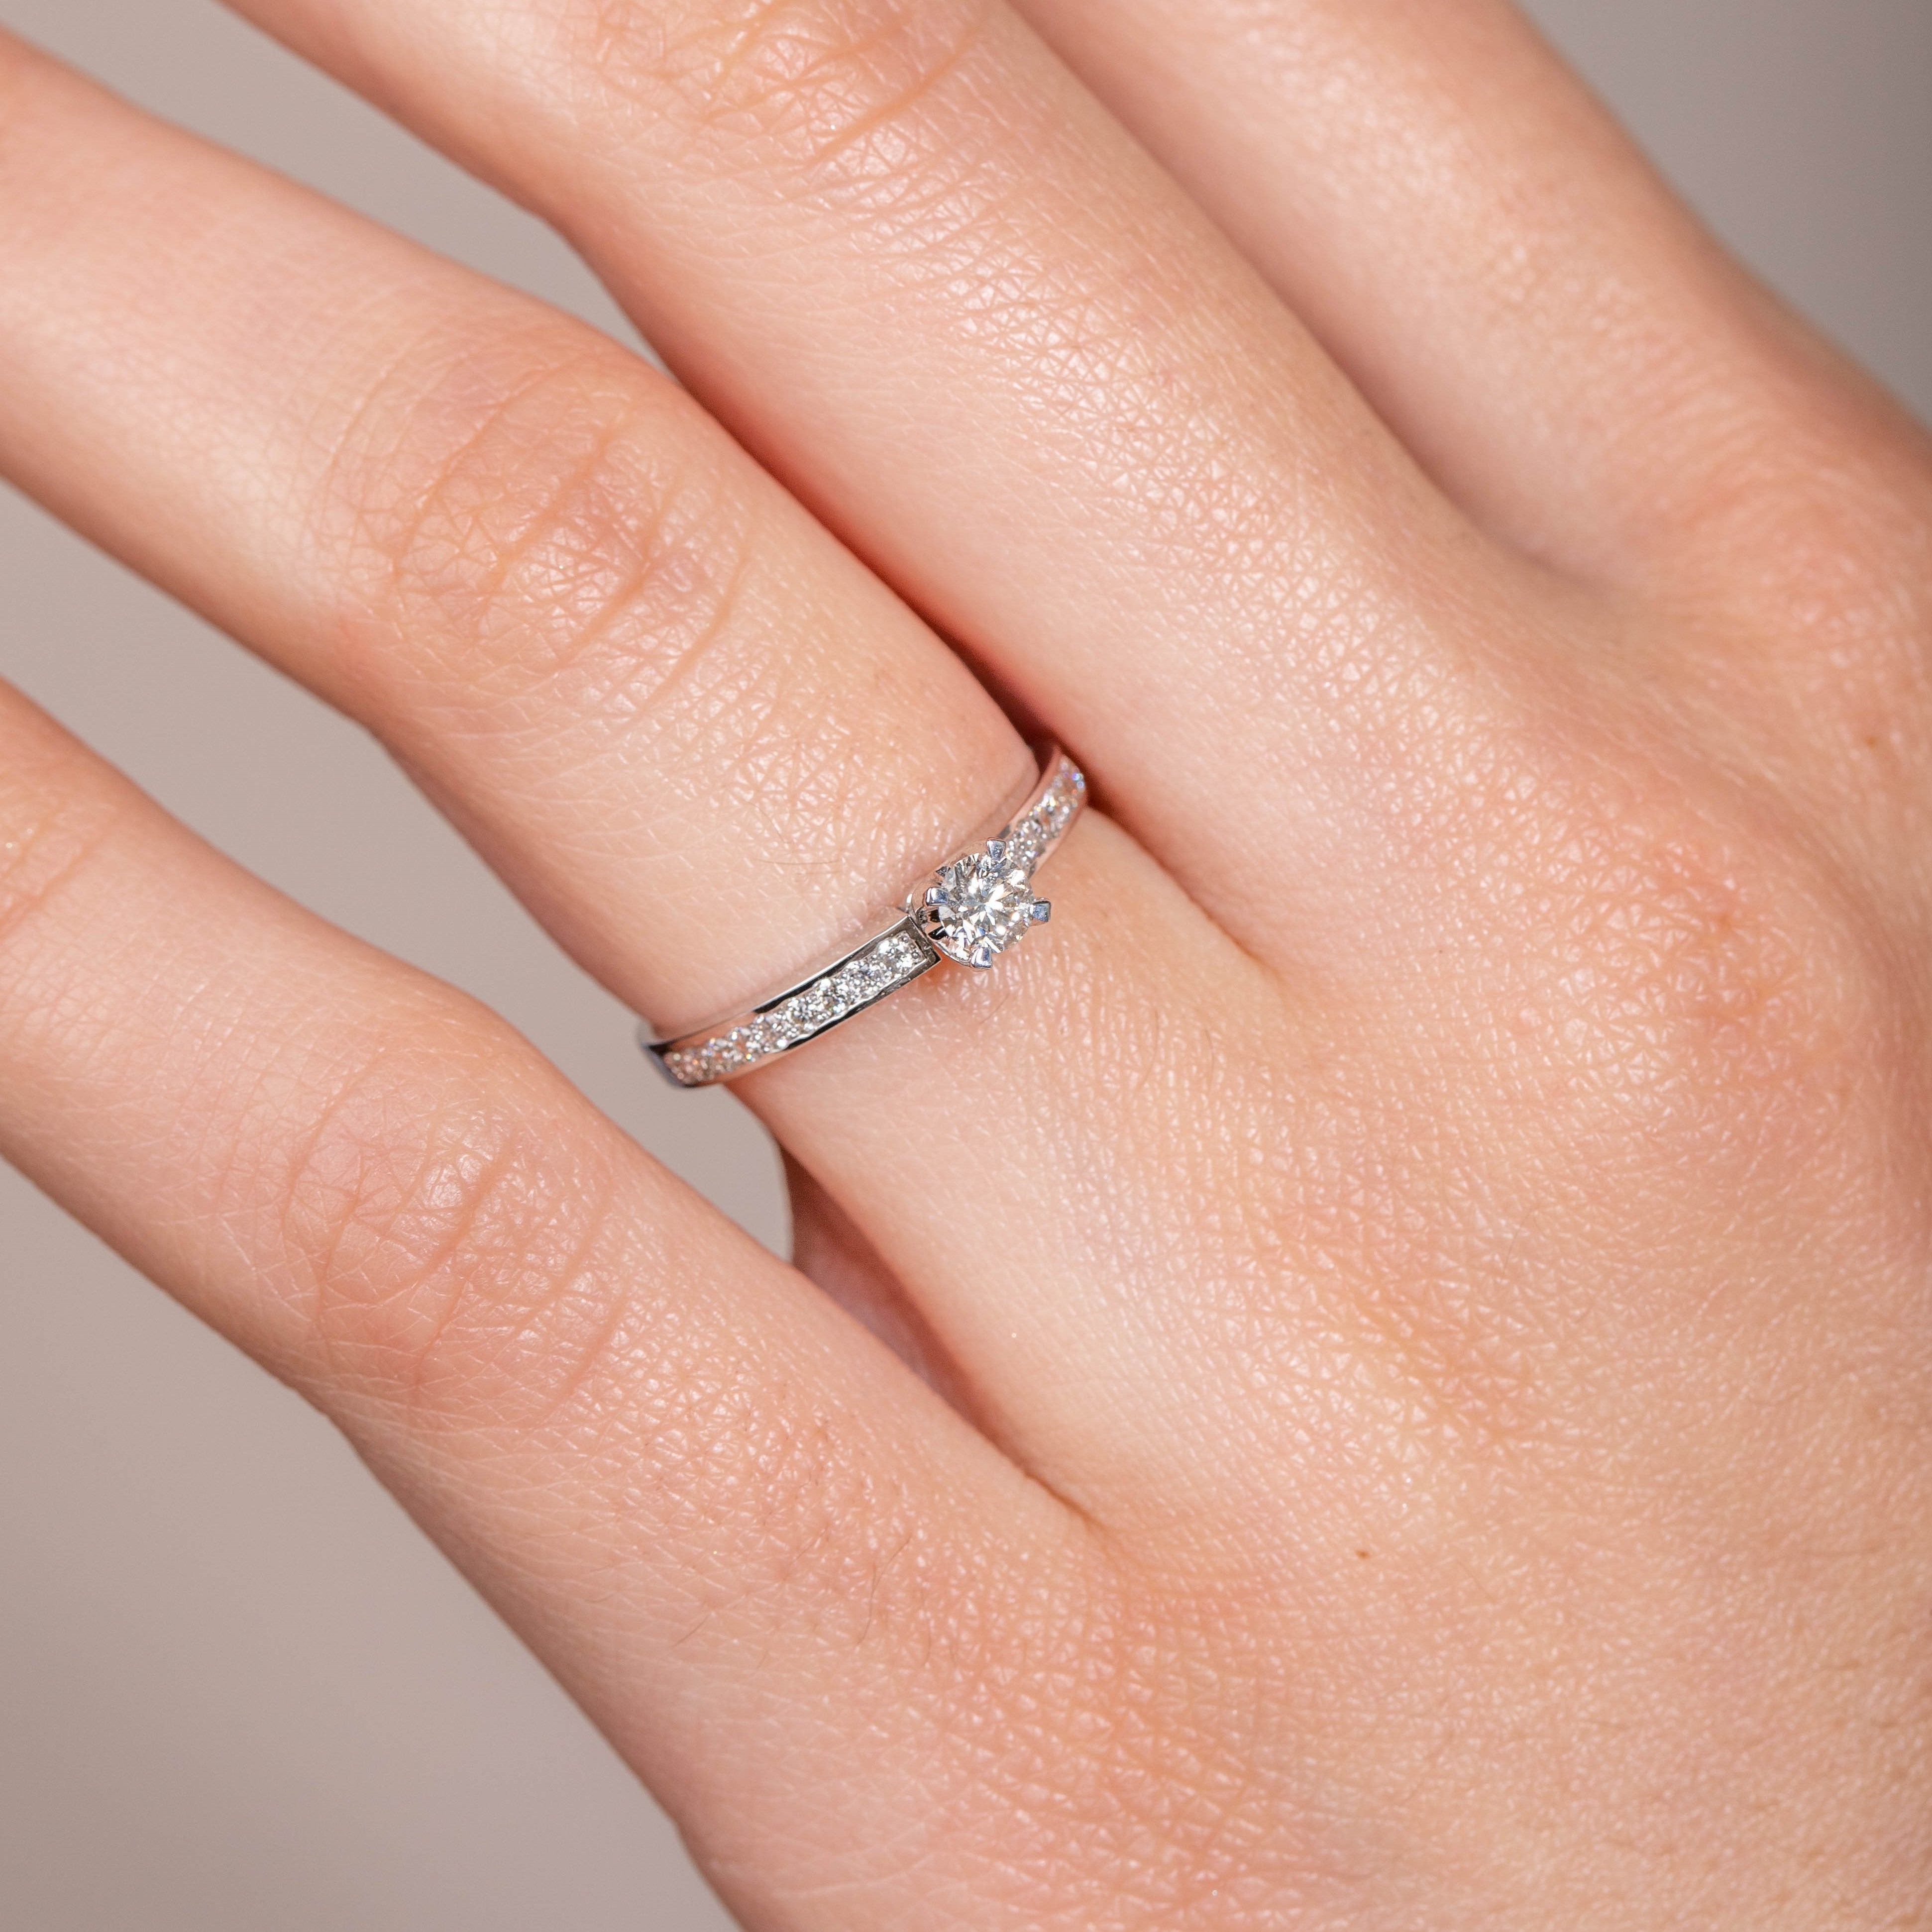 Diamond Engagement Ring 18K White Gold